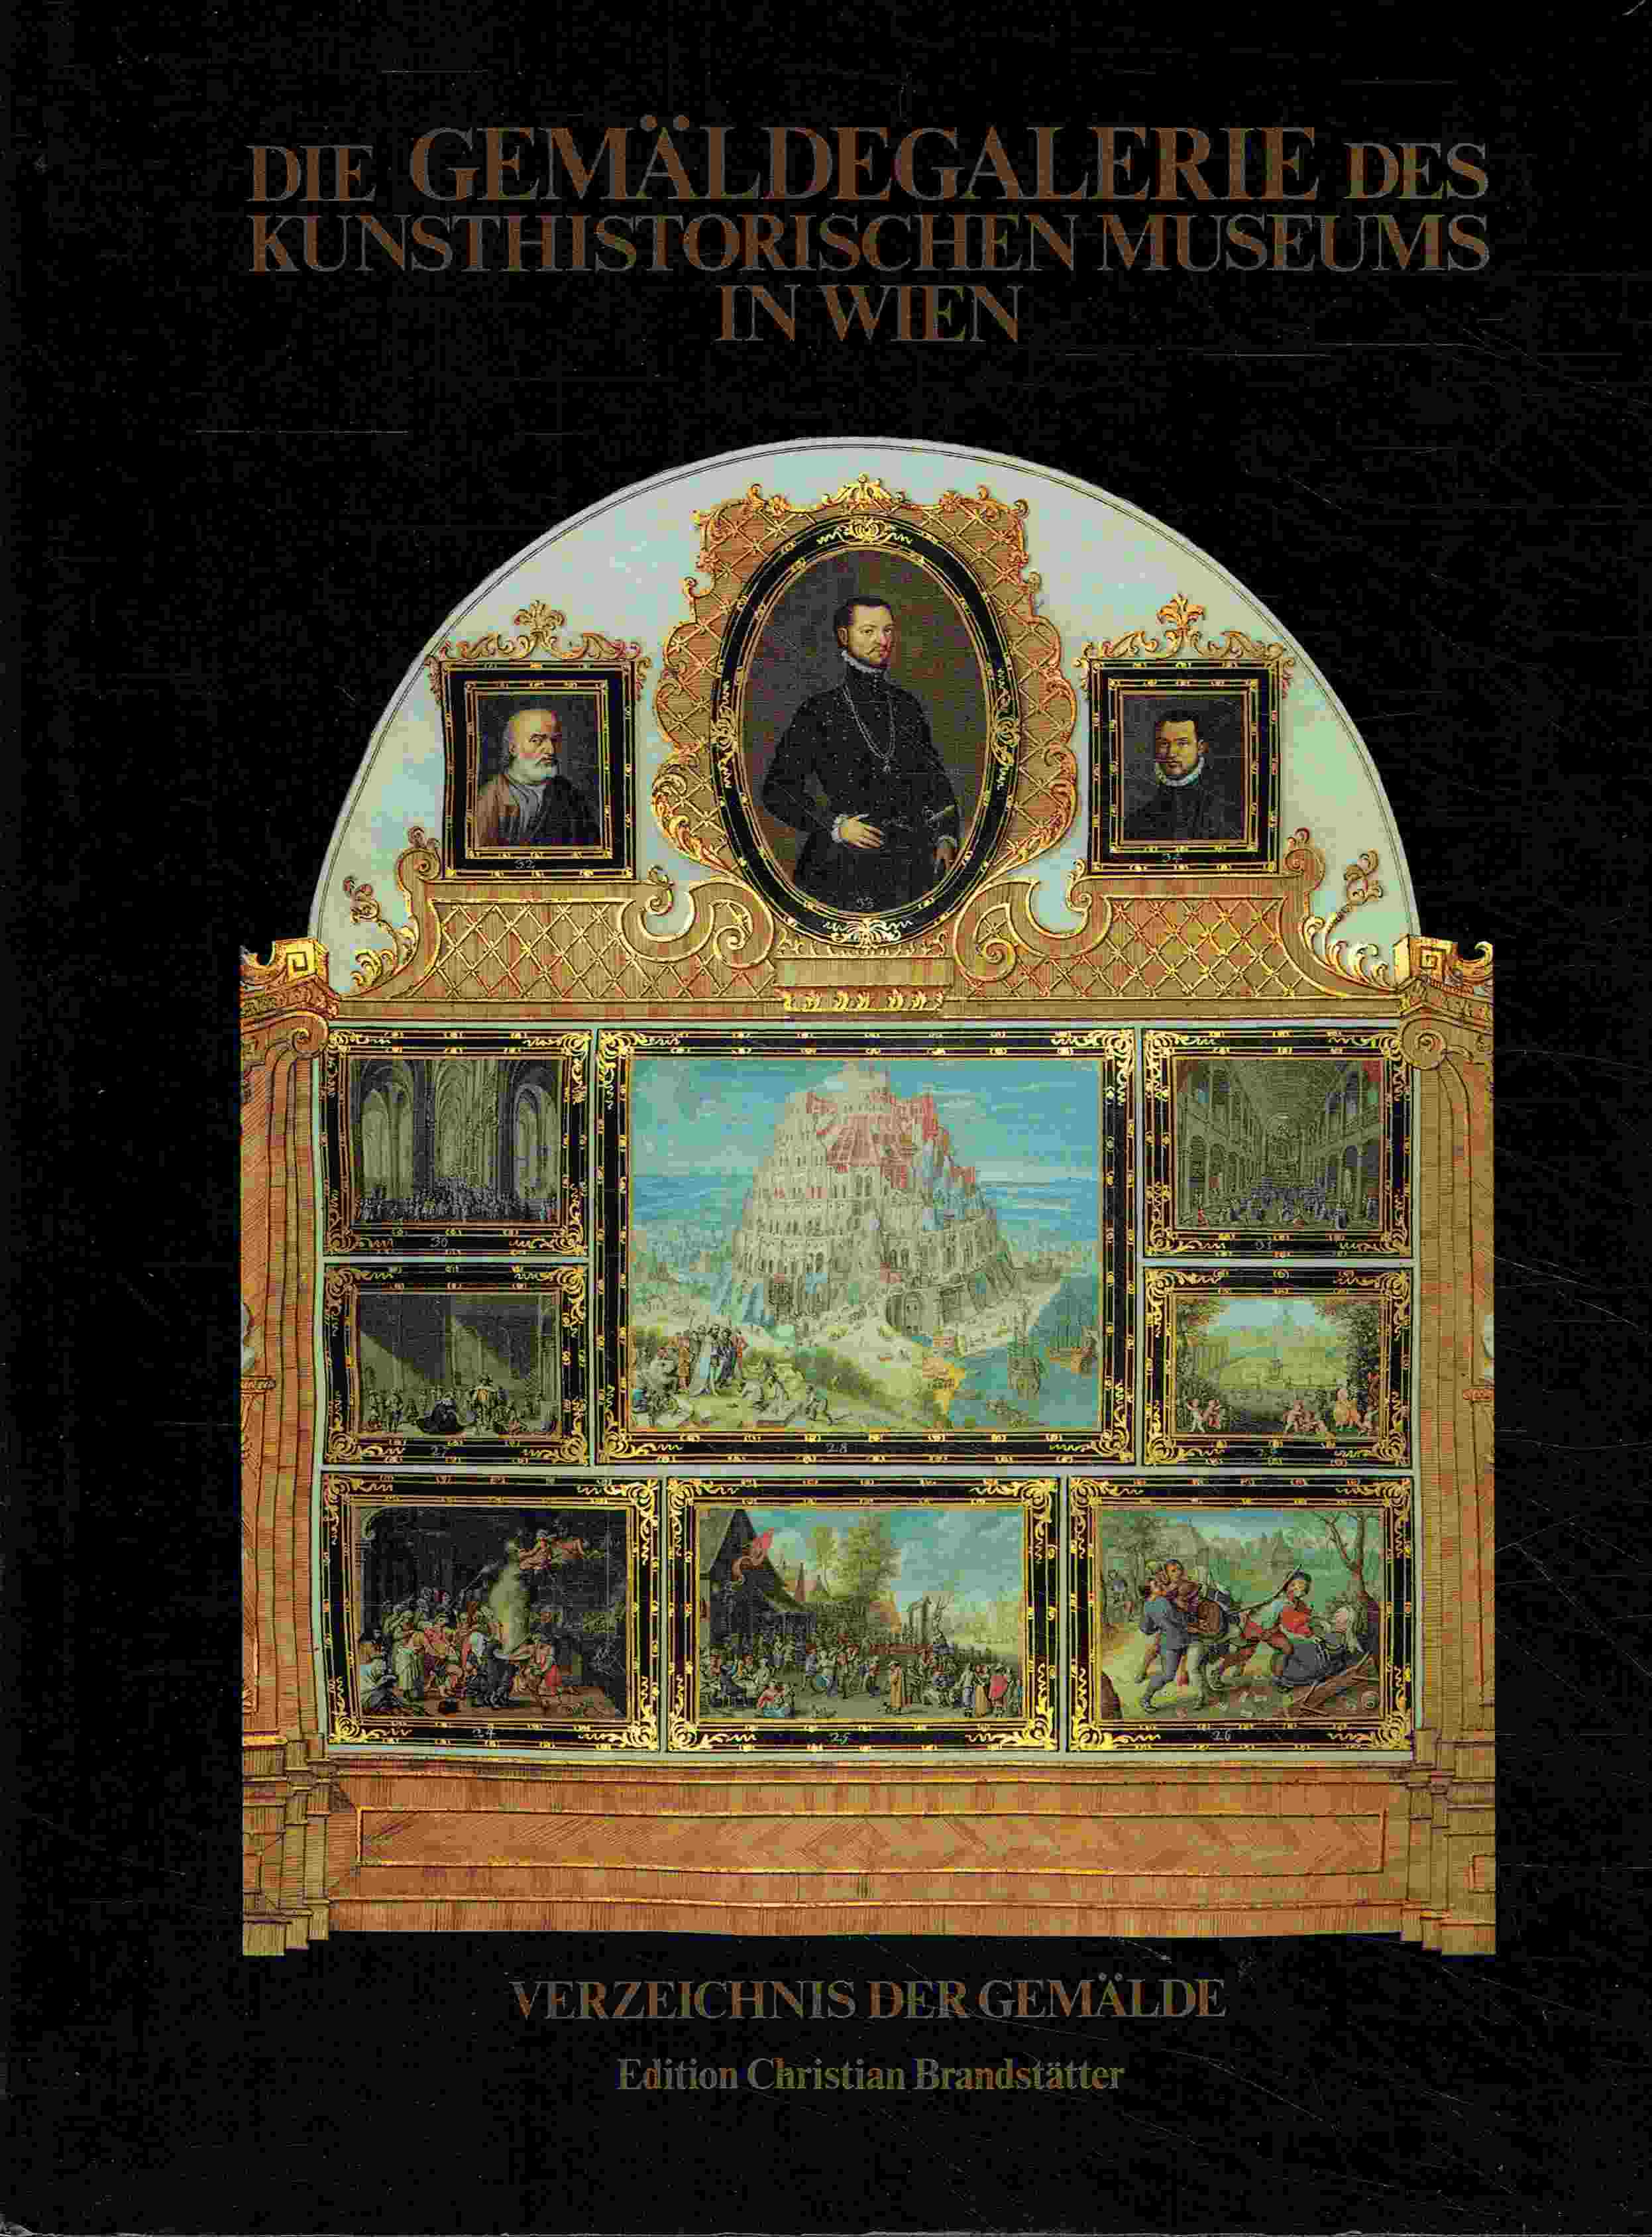 Die Gemäldegalerie des Kunsthistorischen Museums in Wien. Verzeichnis der Gemälde. - Ferino-Pagden, Sylvia; Prohaska, Wolfgang; Schütz, Karl (Hrsg.)